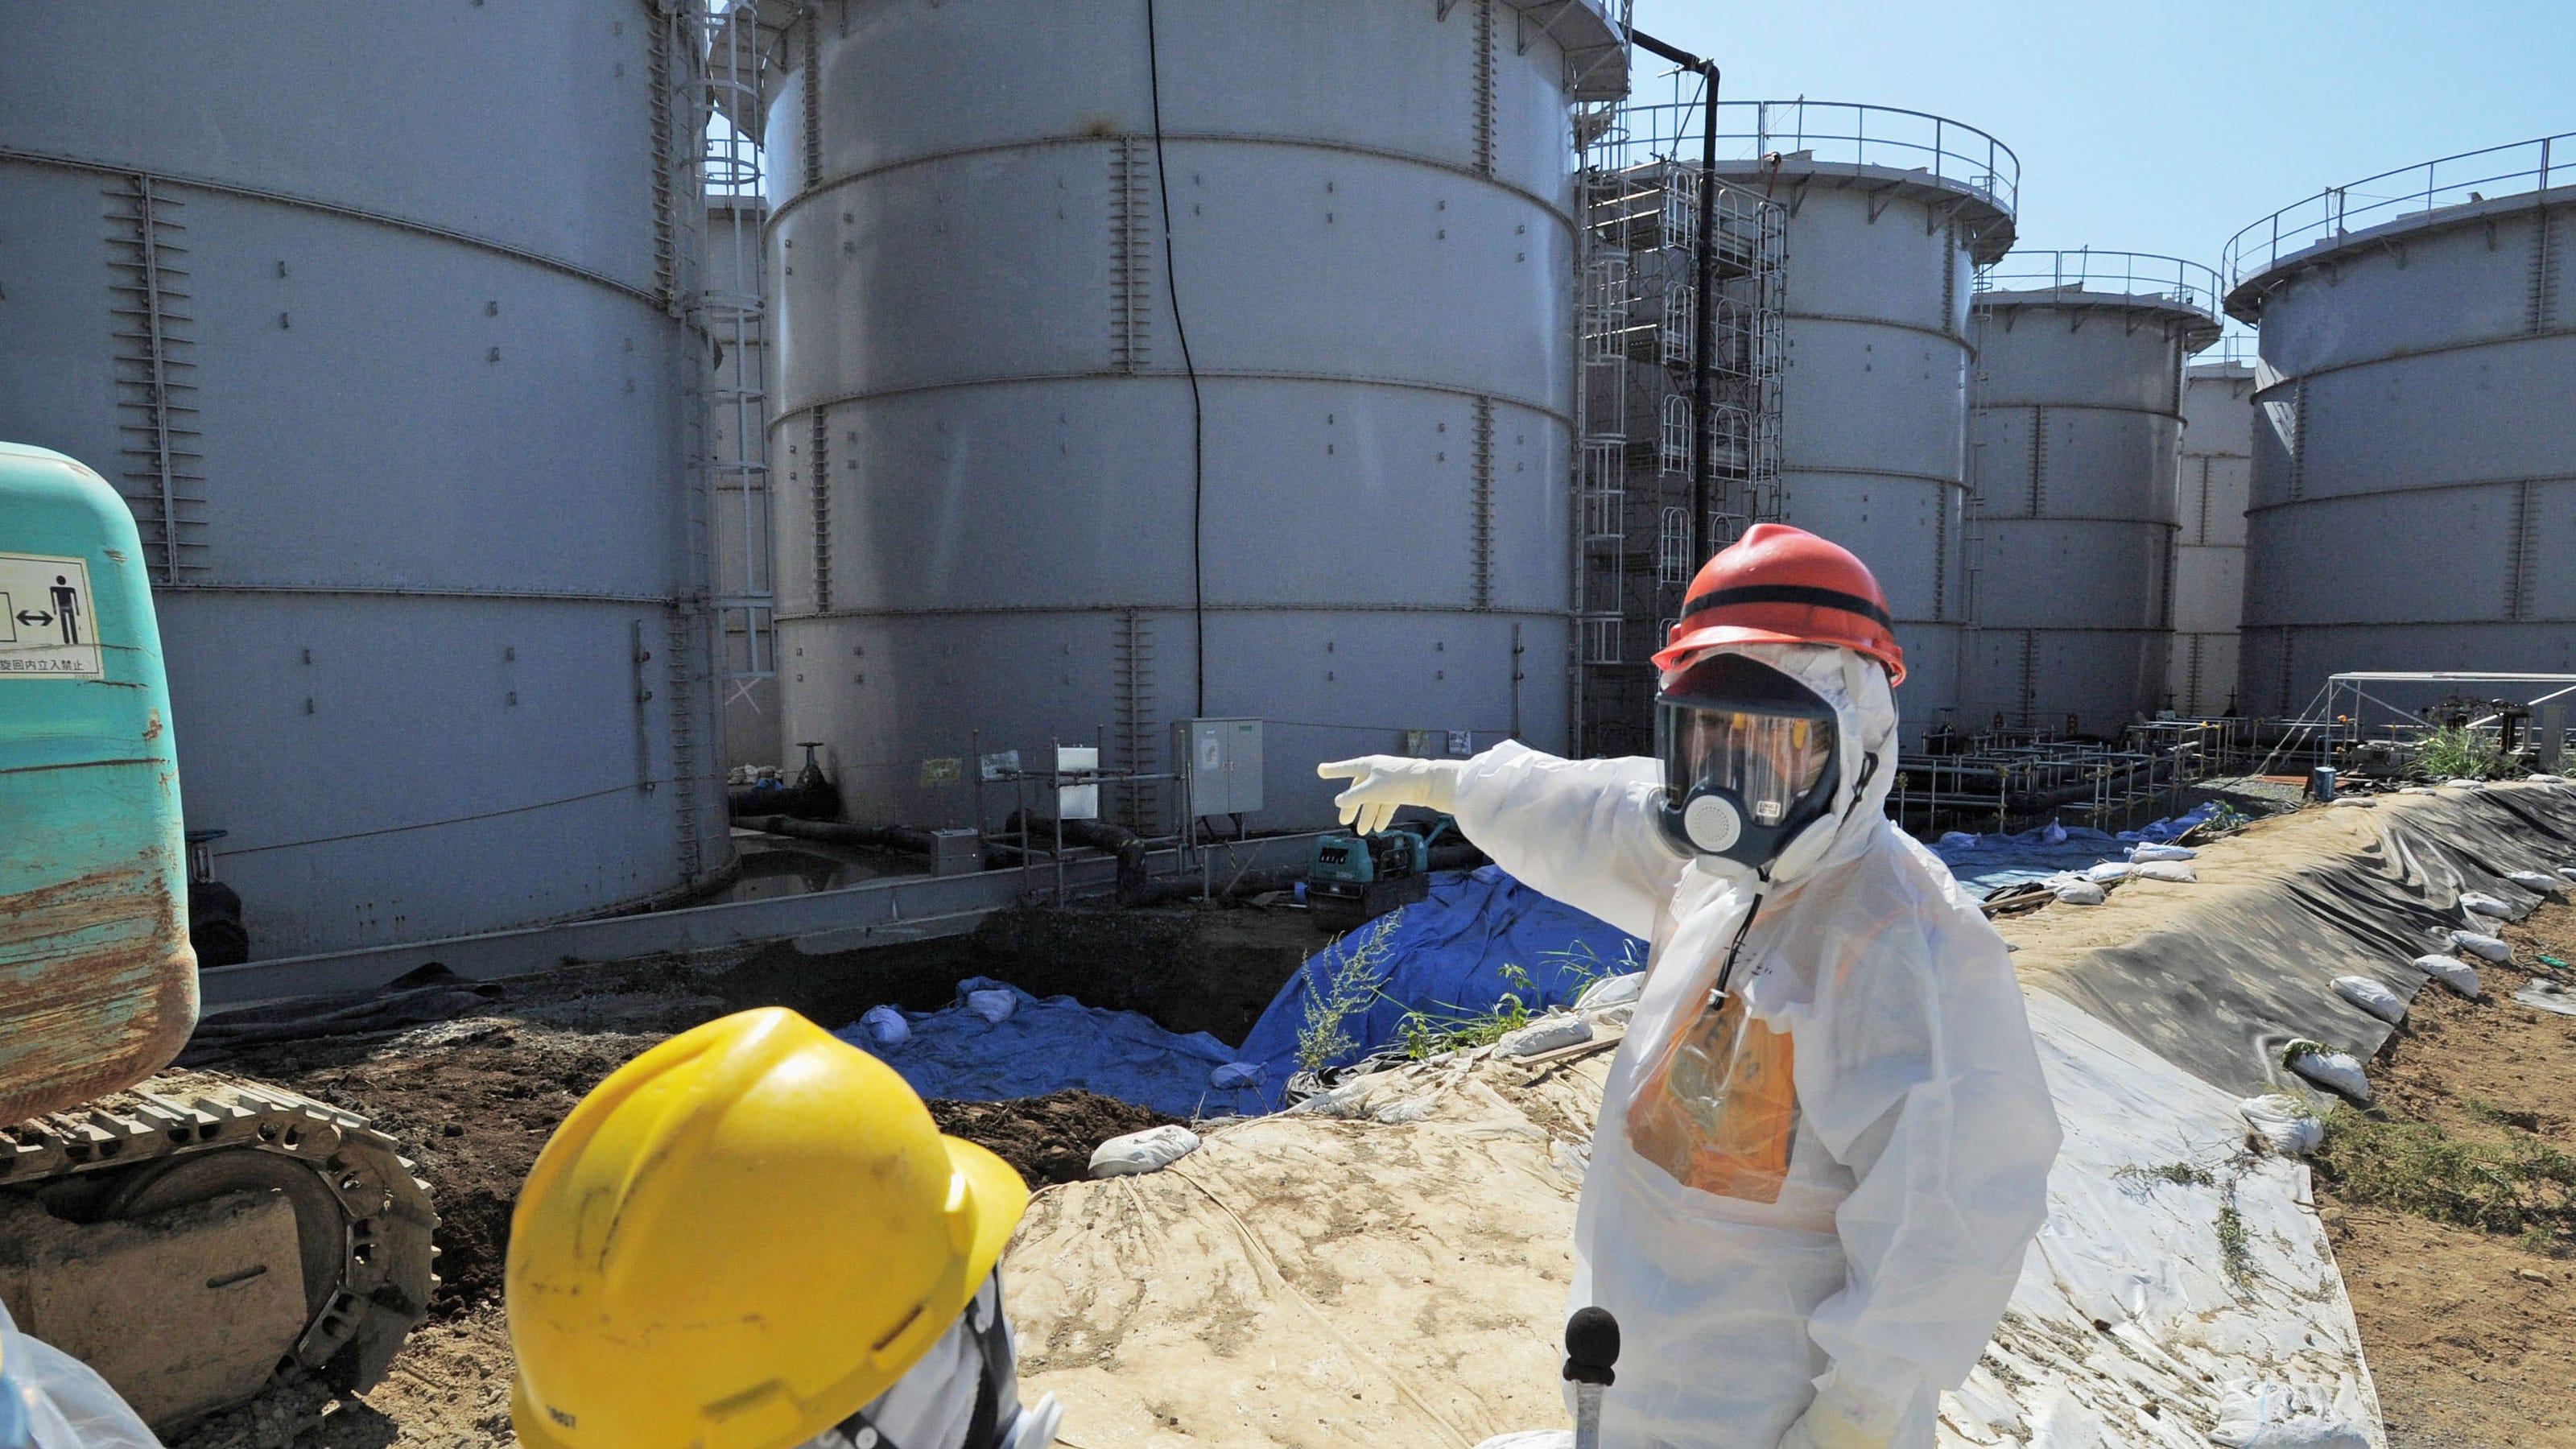 Радиоактивные отходы аэс. Авария на АЭС Фукусима-1. Атомная электростанция Токаймура. АЭС Фукусима сейчас. Радиоактивные отходы.